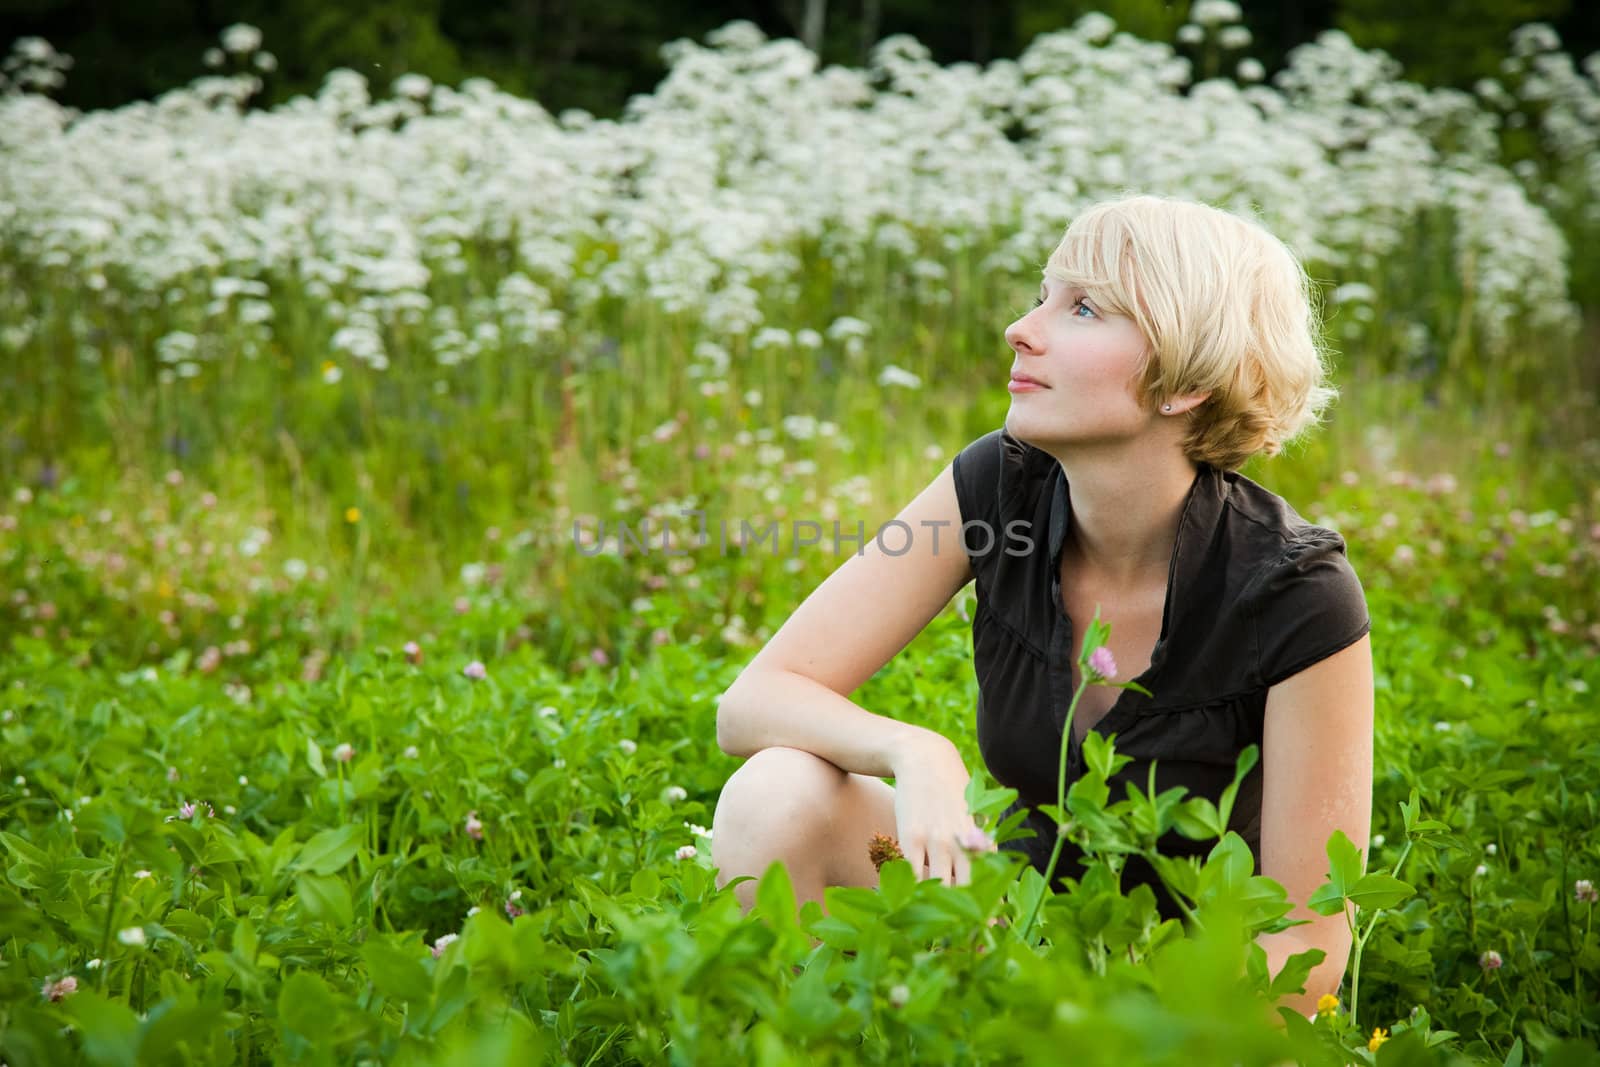 Girl in a field of flowers